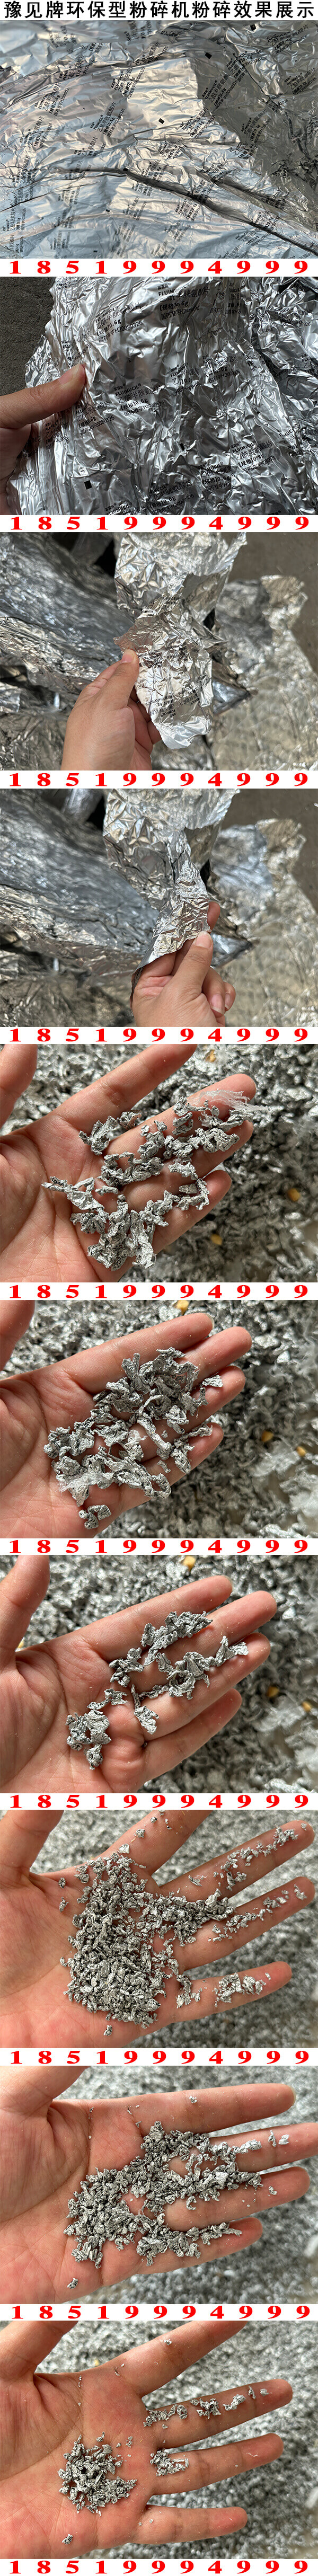 铝塑复合袋粉碎机图片